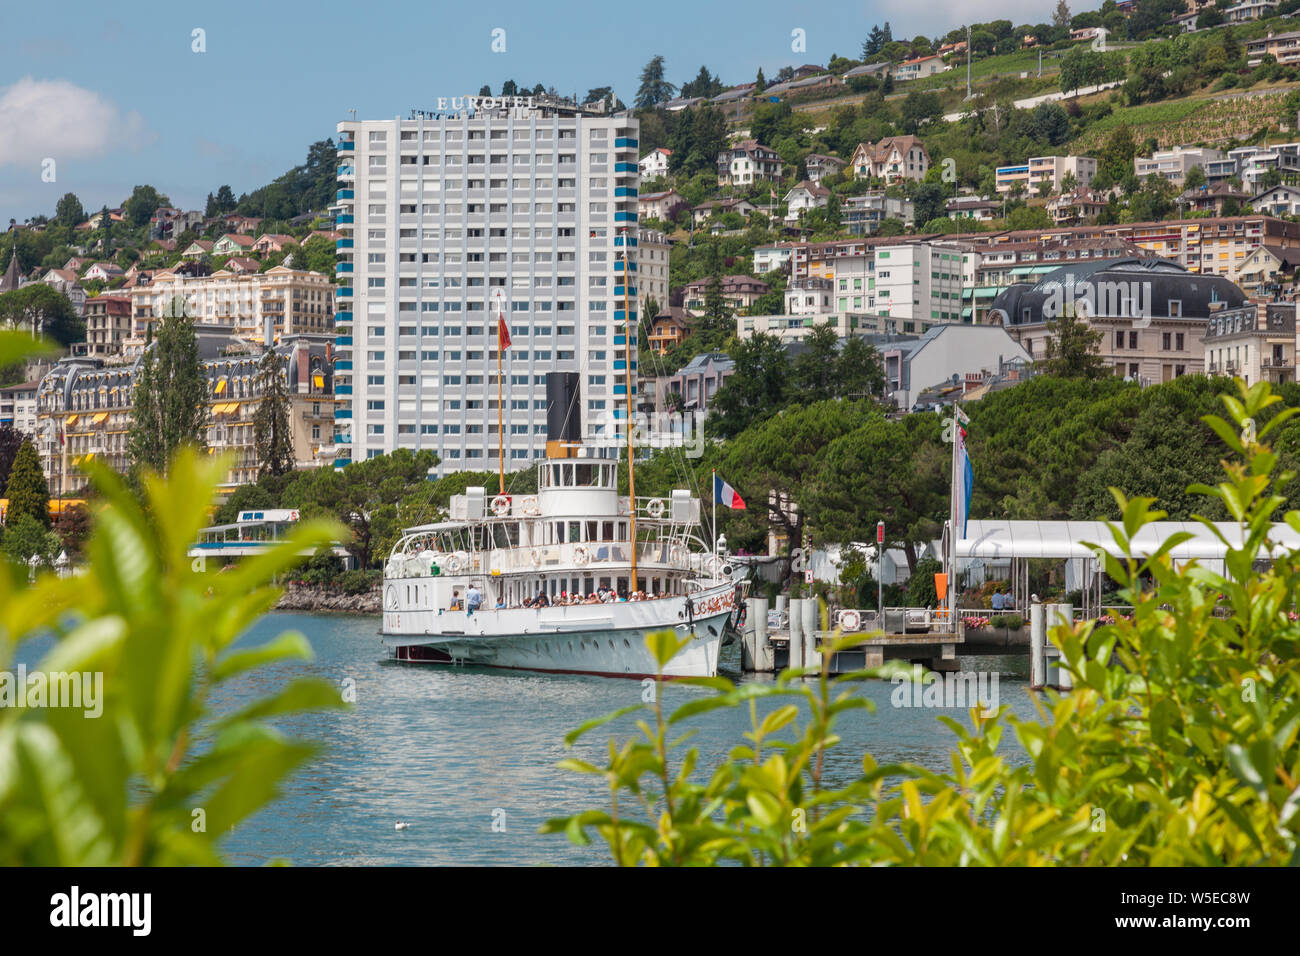 Belle Epoque restaurierten alten Tretboot namens Italie am Pier in Montreux, Genfersee (Lac Leman), Waadt, Schweiz mit Eurotel Gebäude Stockfoto